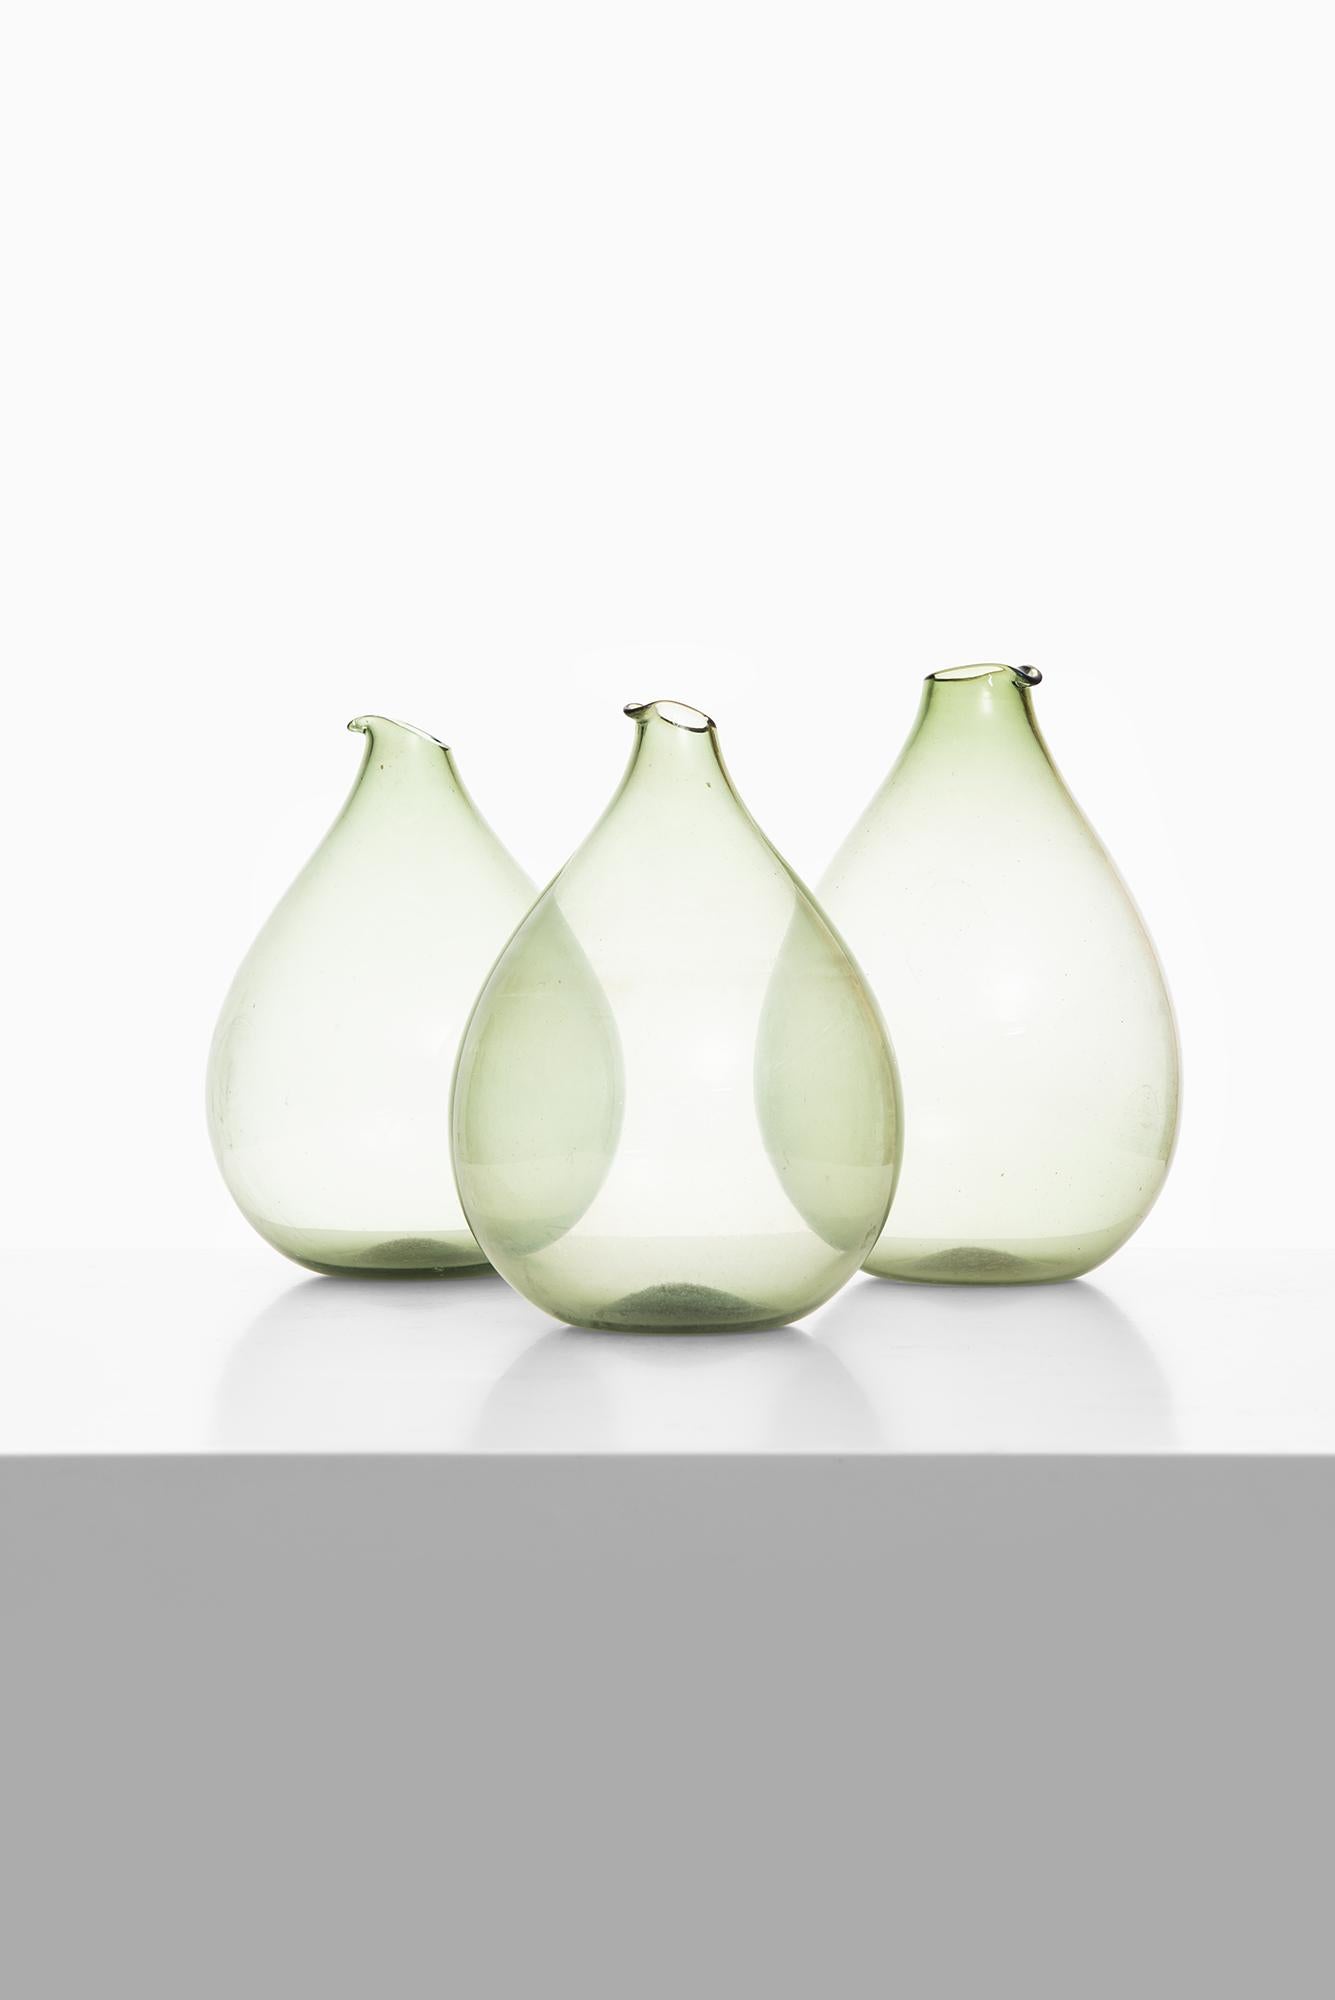 Set of 3 glass vases designed by Kjell Blomberg. Produced in Gullaskruf in Sweden.